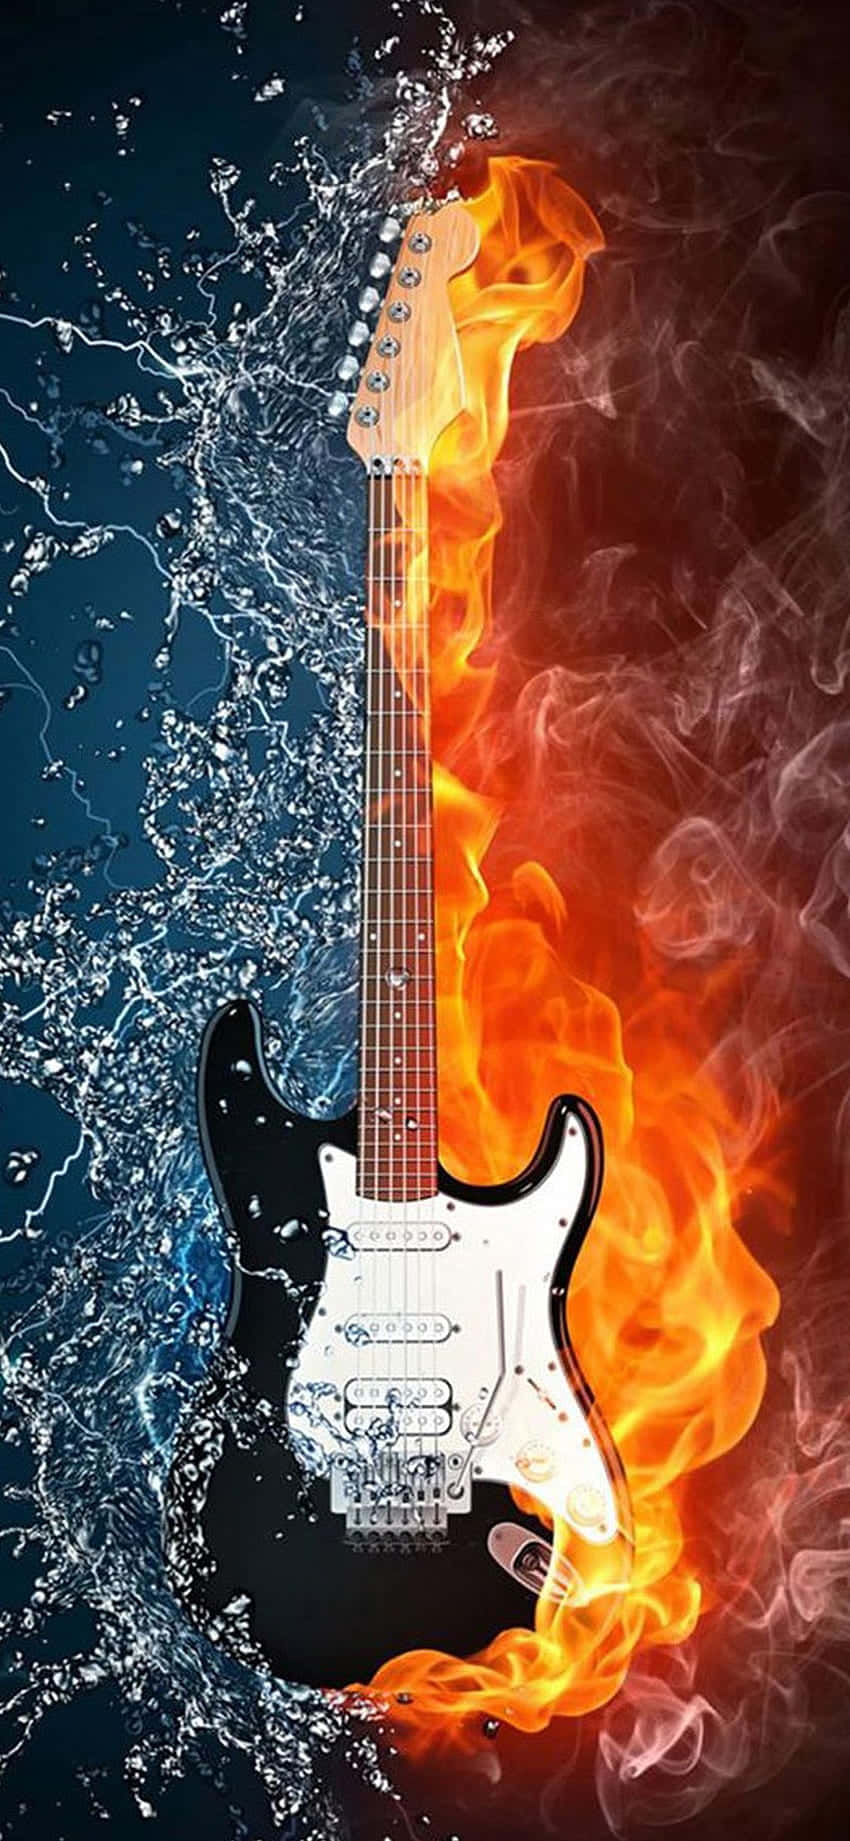 Apple Iphone X Guitar Fire Water Wallpaper